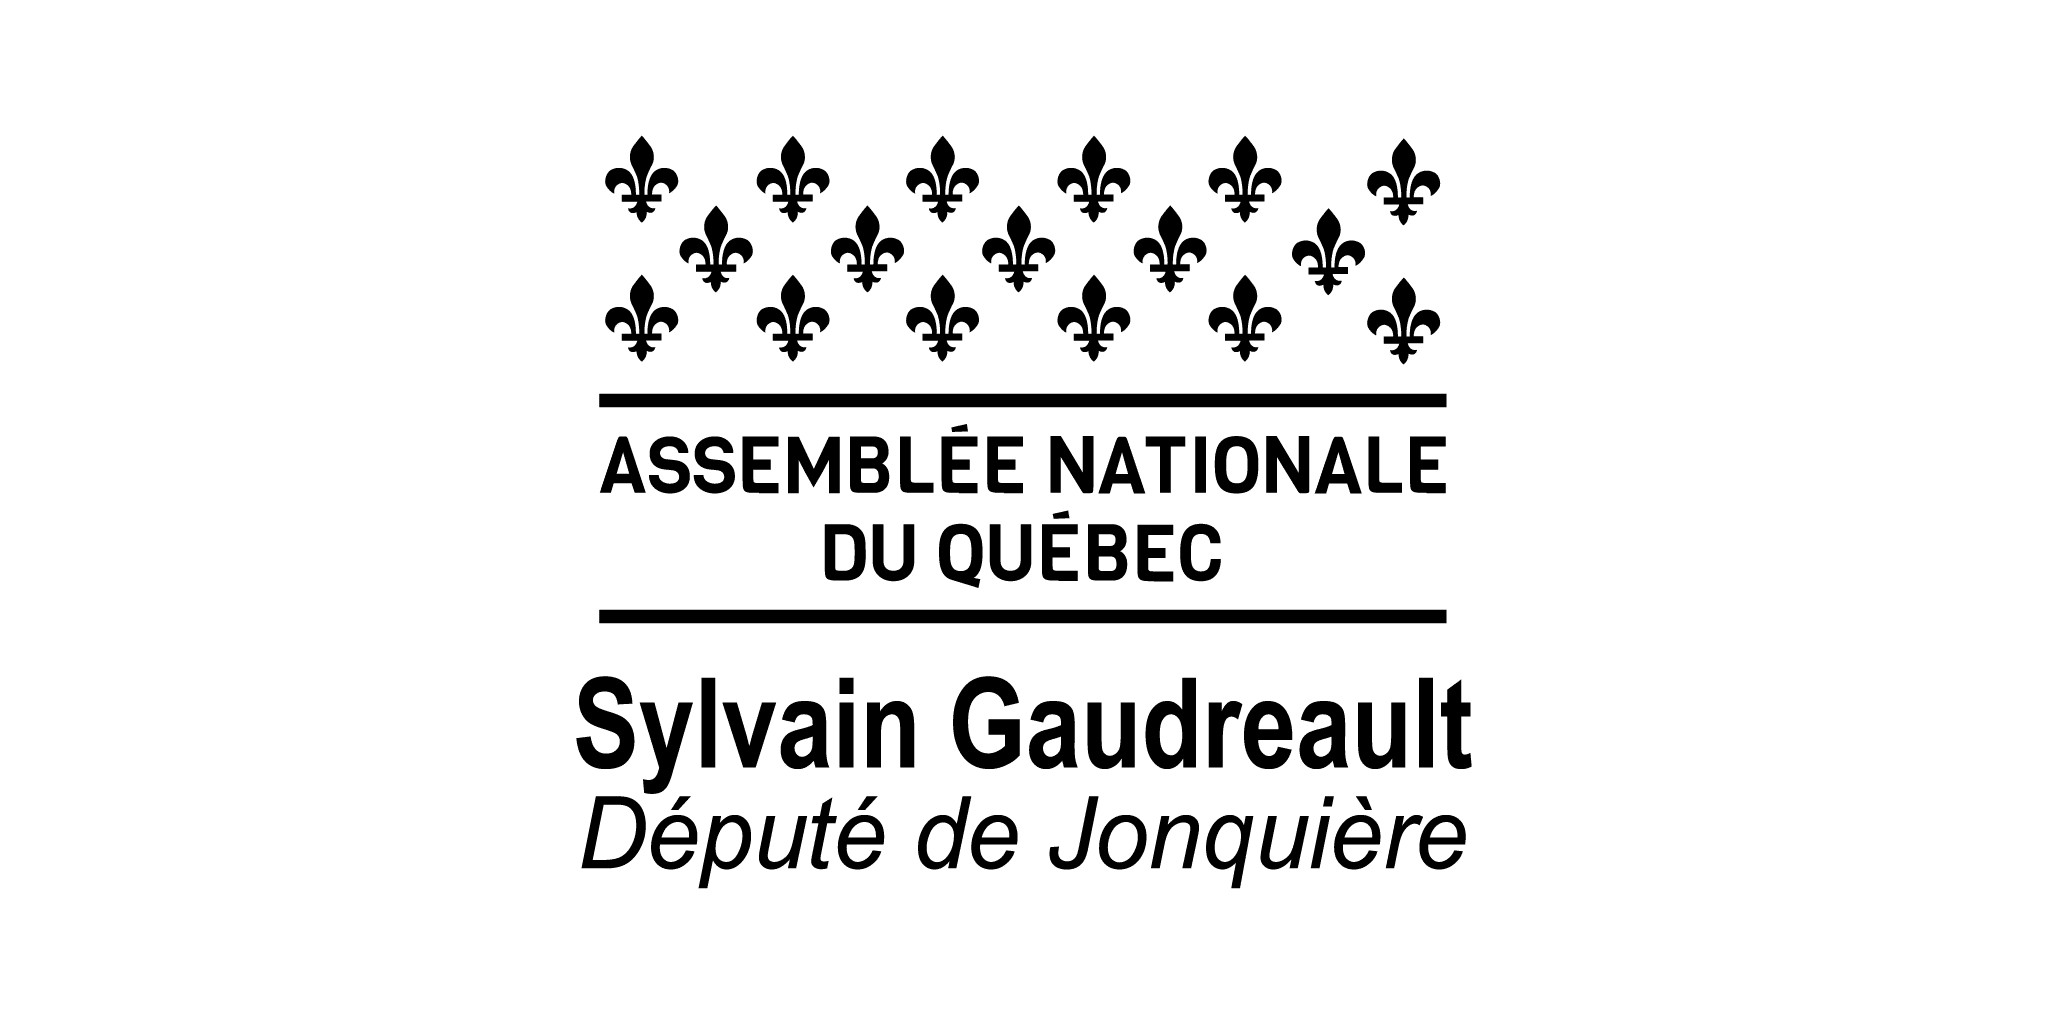 Sylvain Gaudreault, député de Jonquière